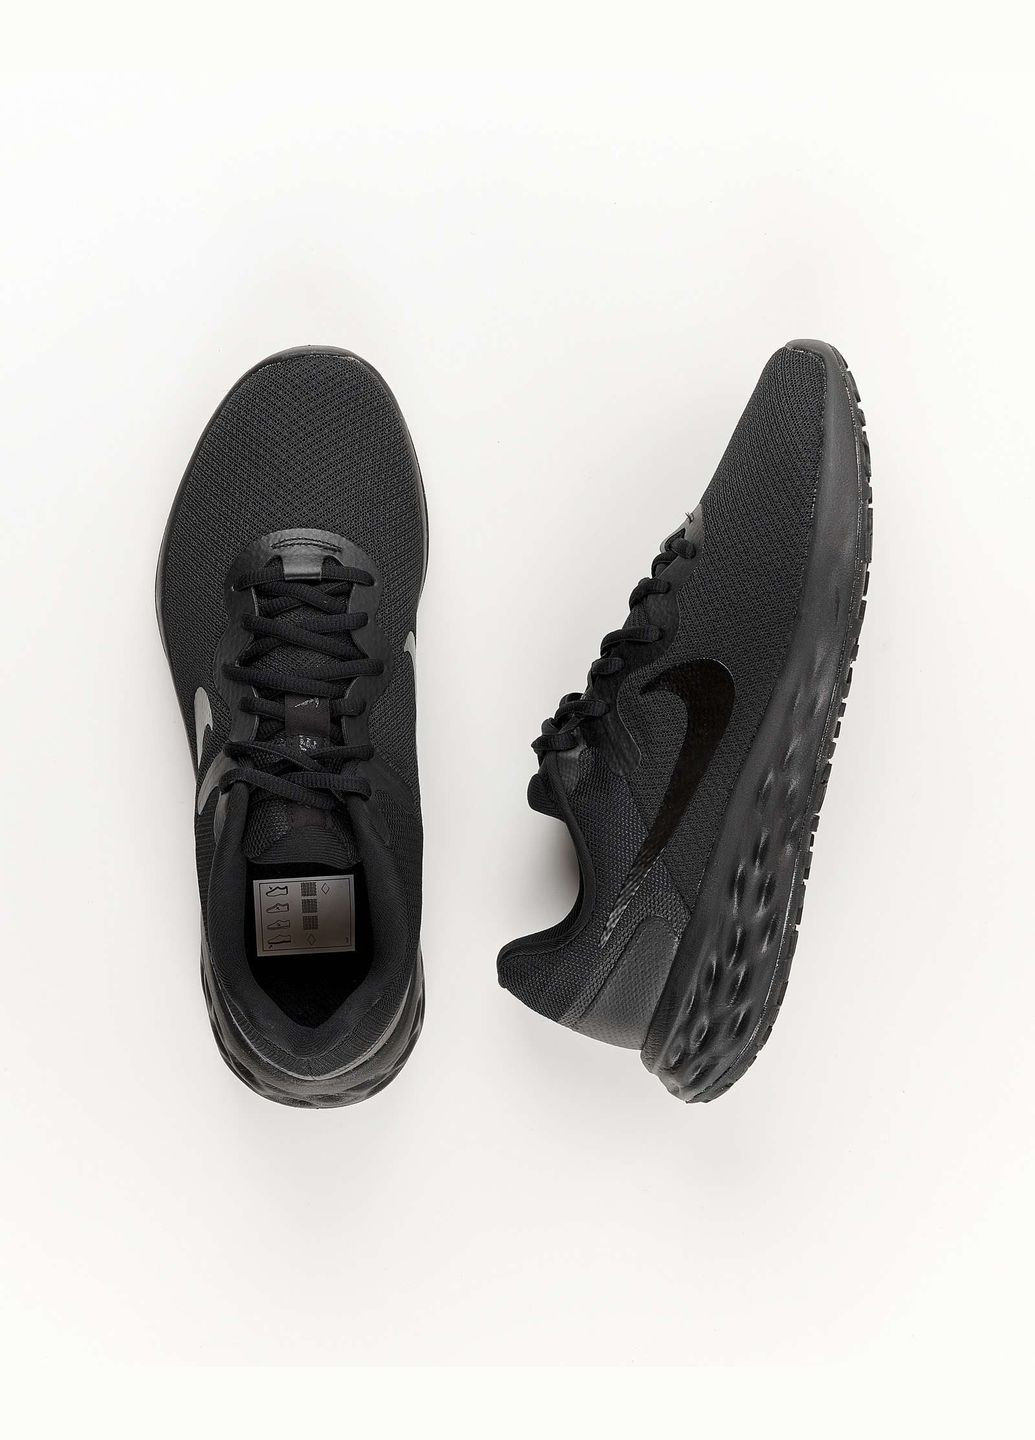 Чорні всесезон кросівки чоловічі revolution 6 nn dc3728-001 літо текстиль сітка чорні Nike